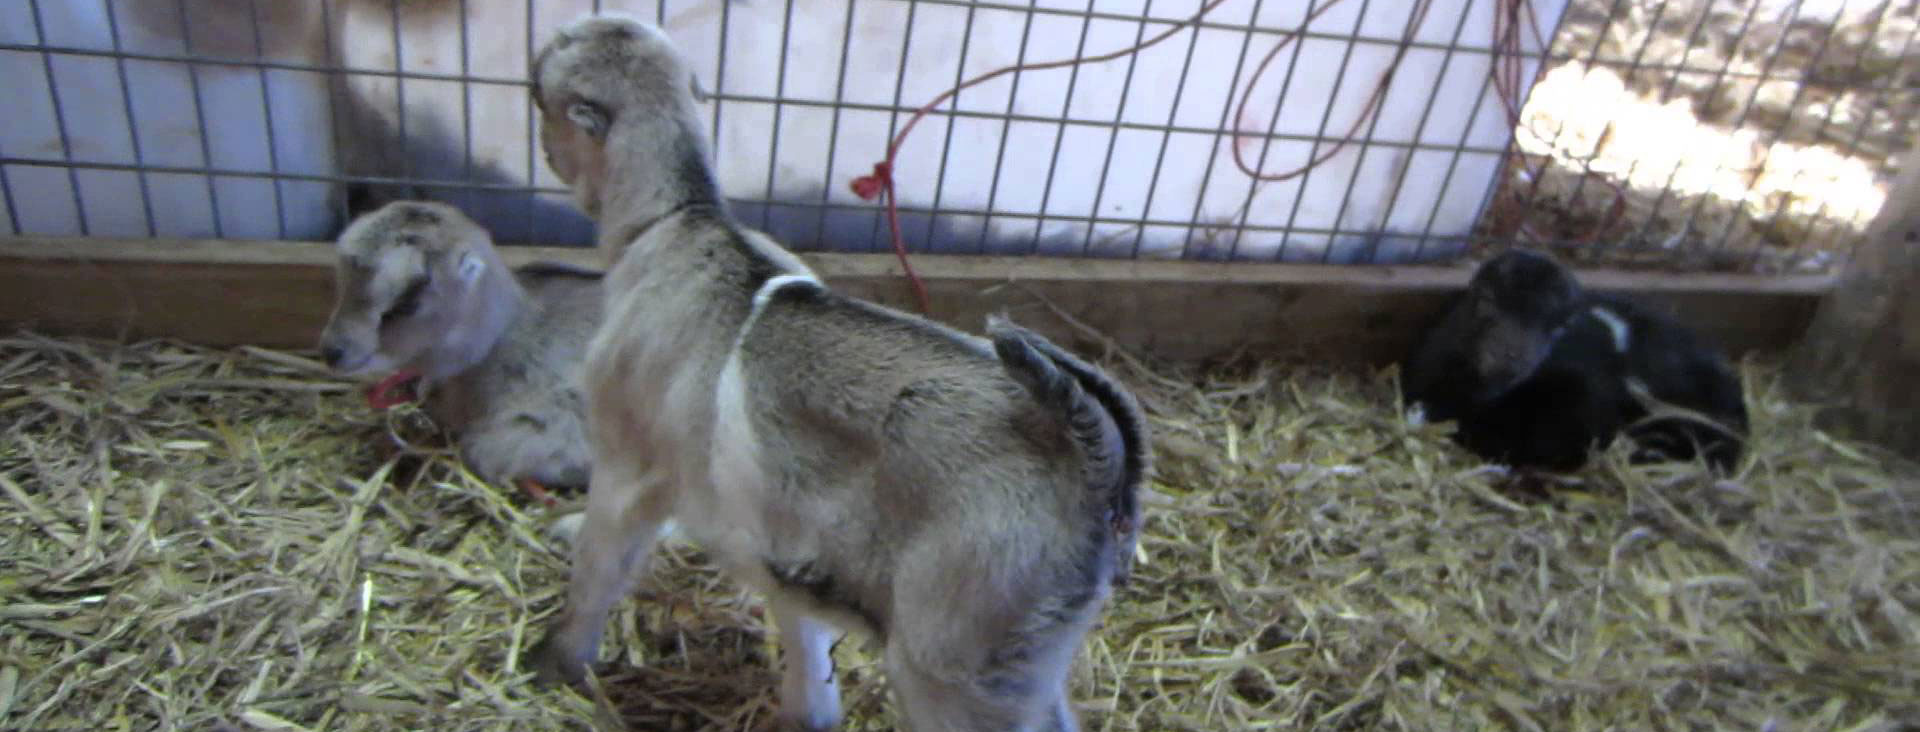 Two lamancha goats in pen